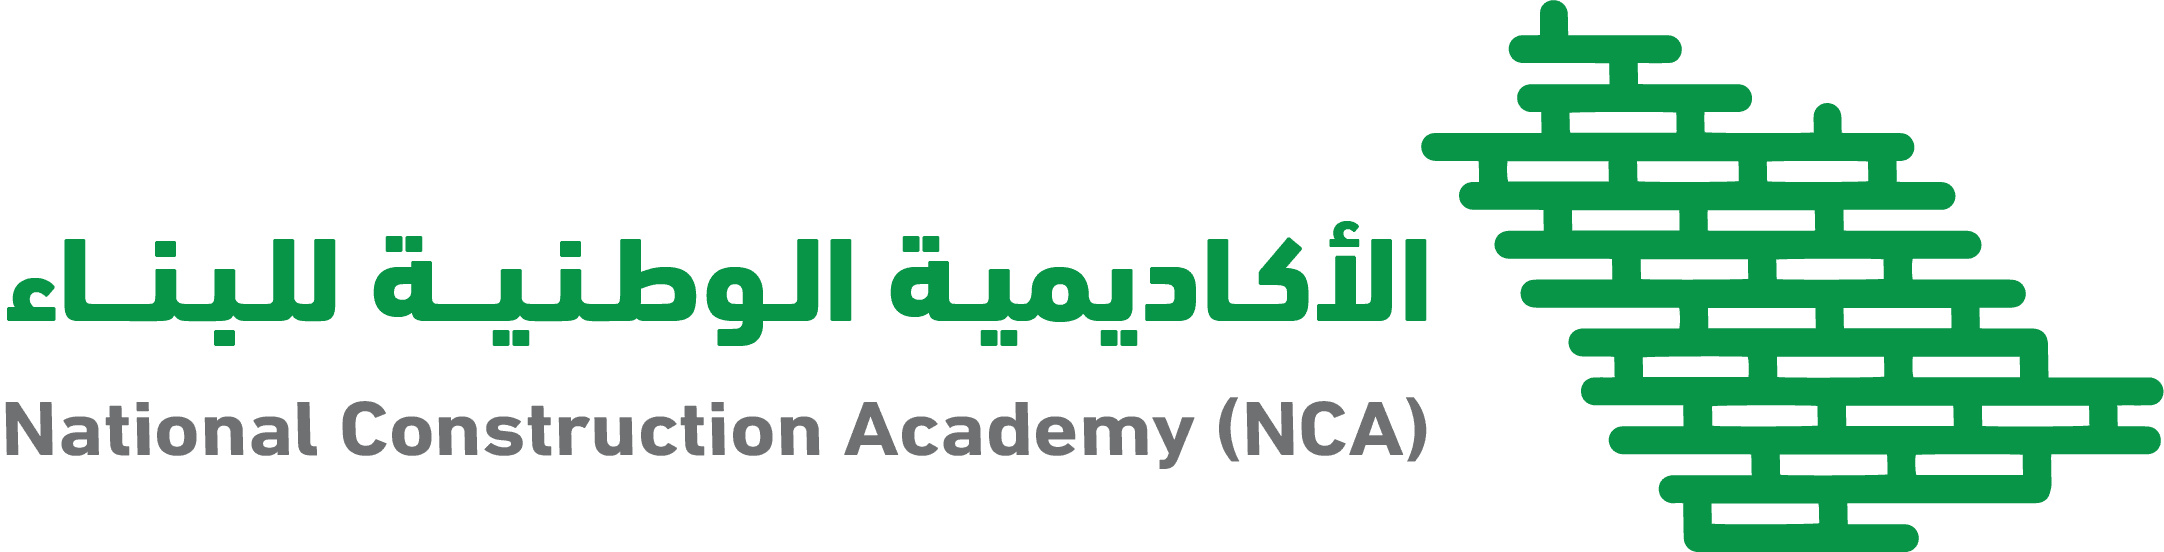 الأكاديمية الوطنية للبناء تعلن برامج منتهية بالتوظيف